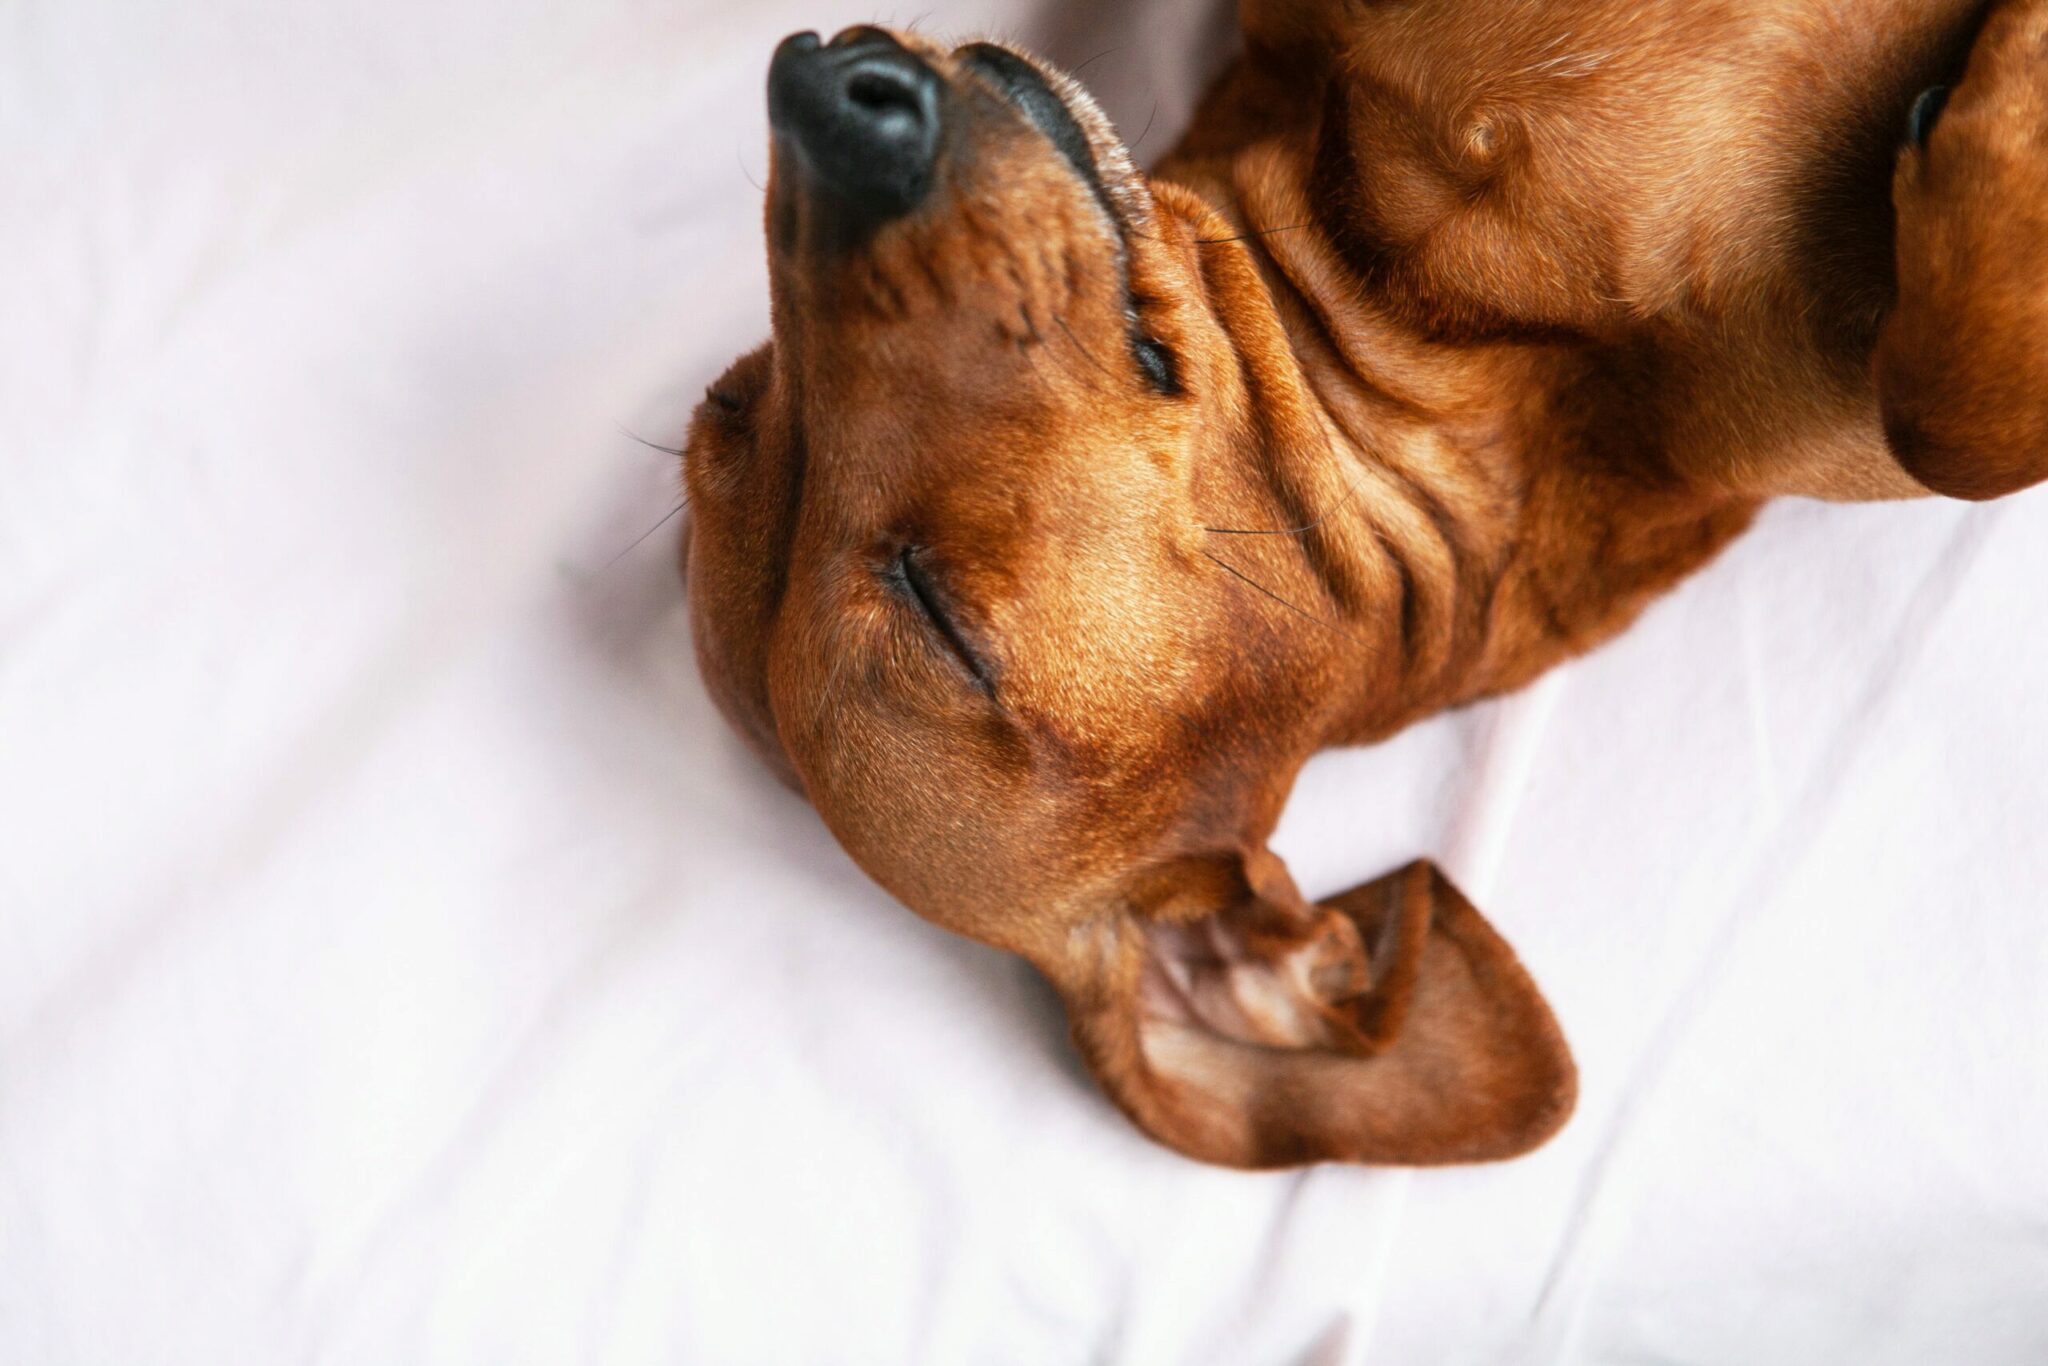 Beste CBD-hondensnoepjes In 2022 Om De Angst En Pijn Van Honden Te Verminderen